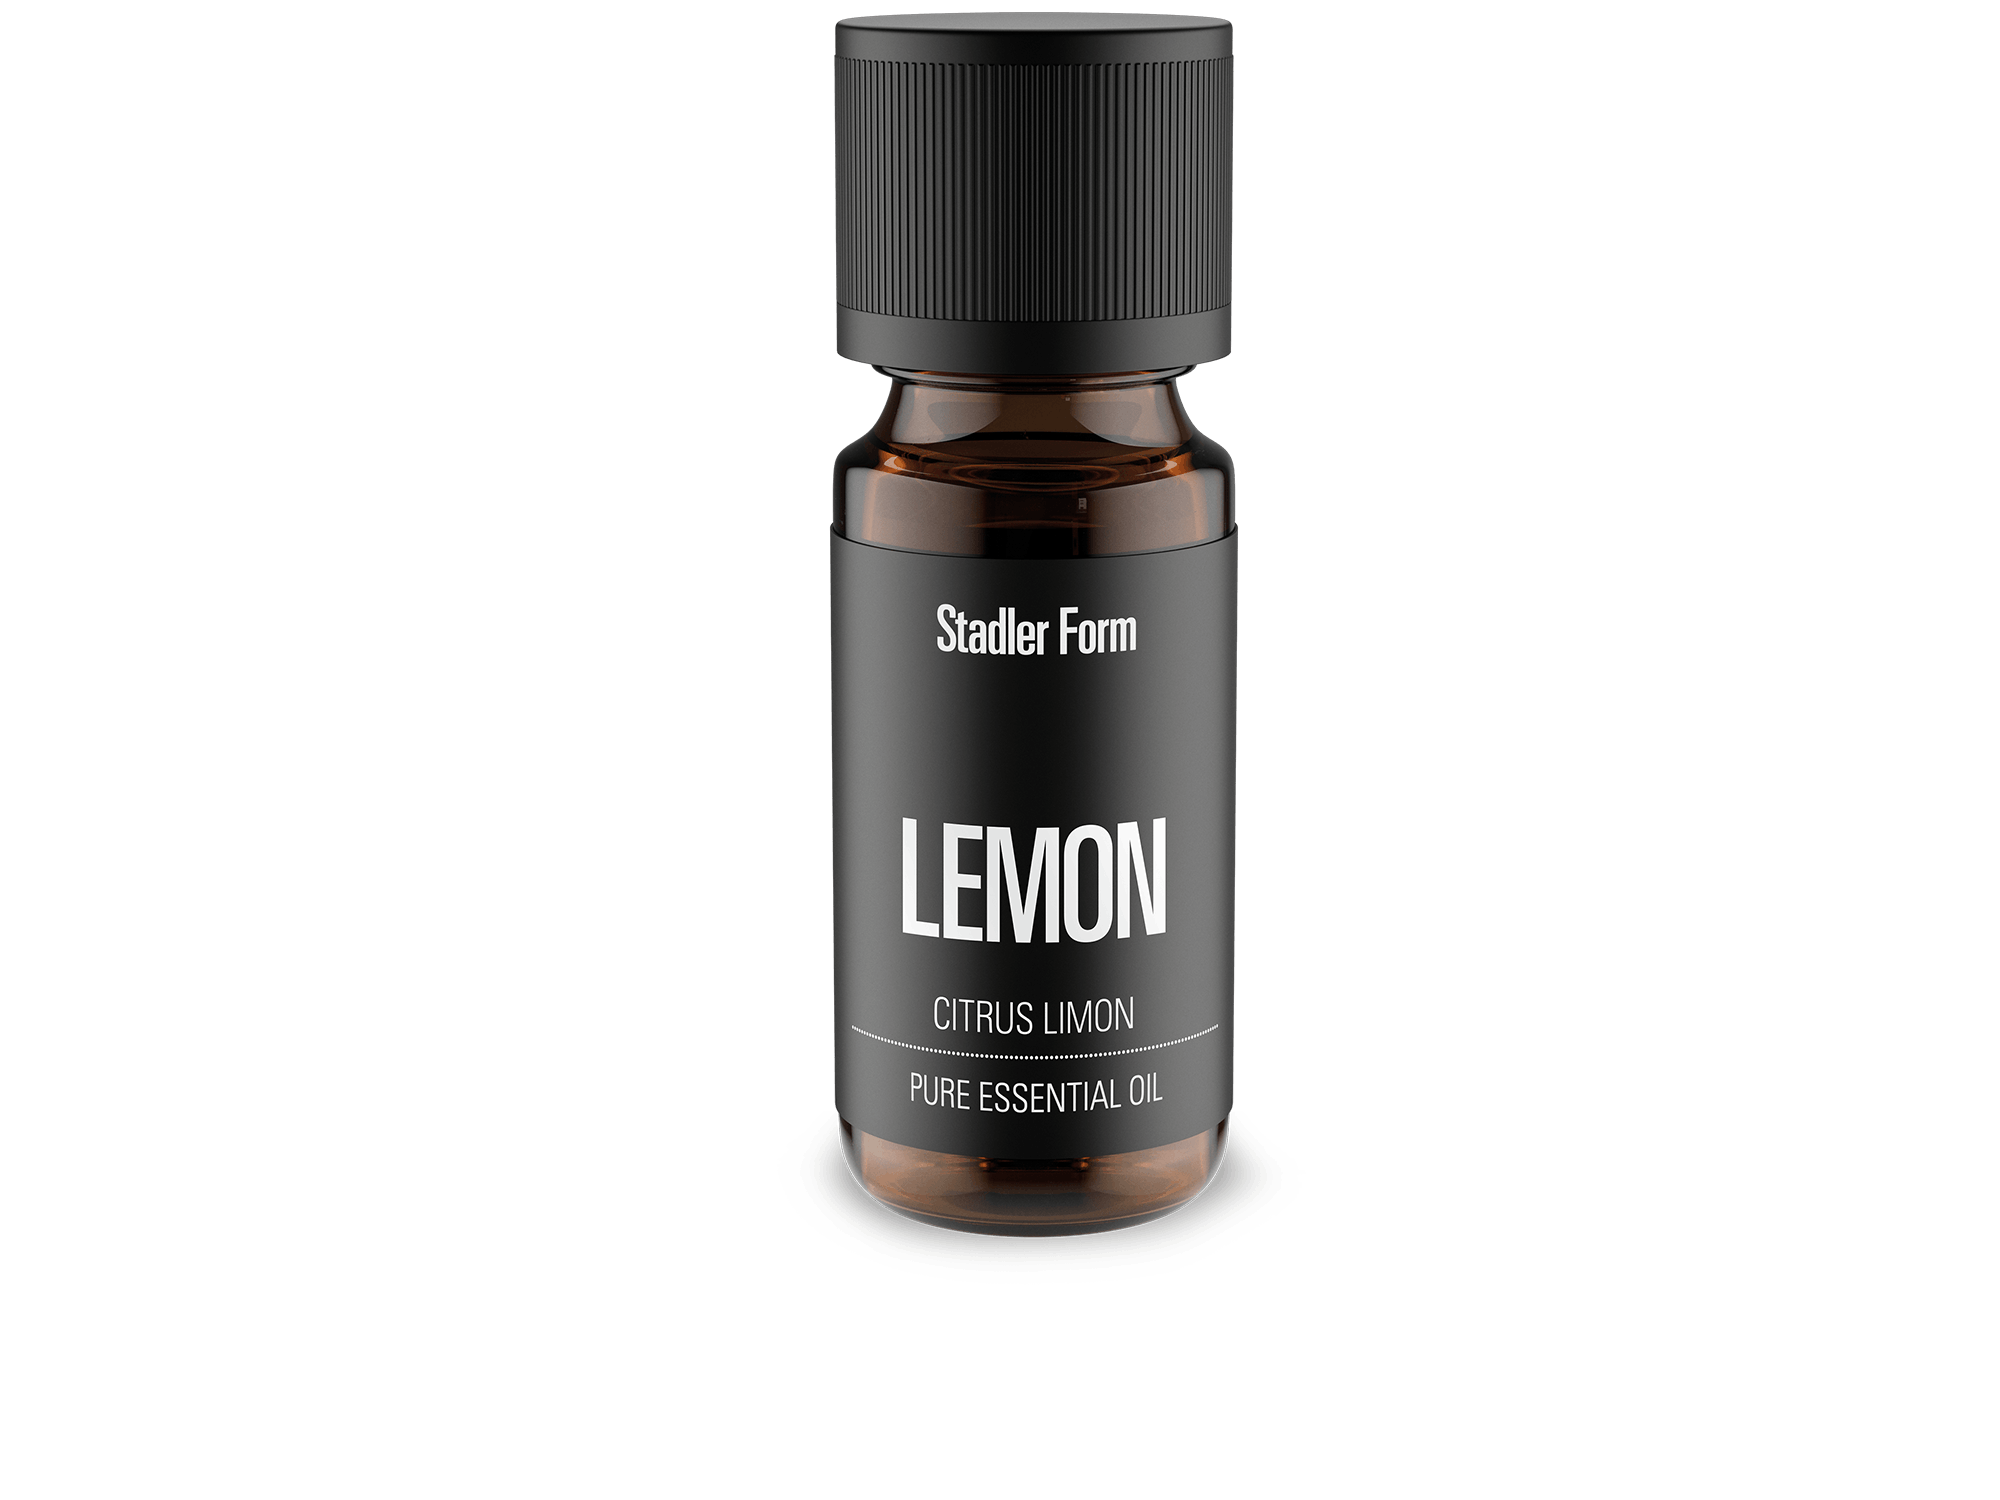 Lemon essential oil by Stadler Form